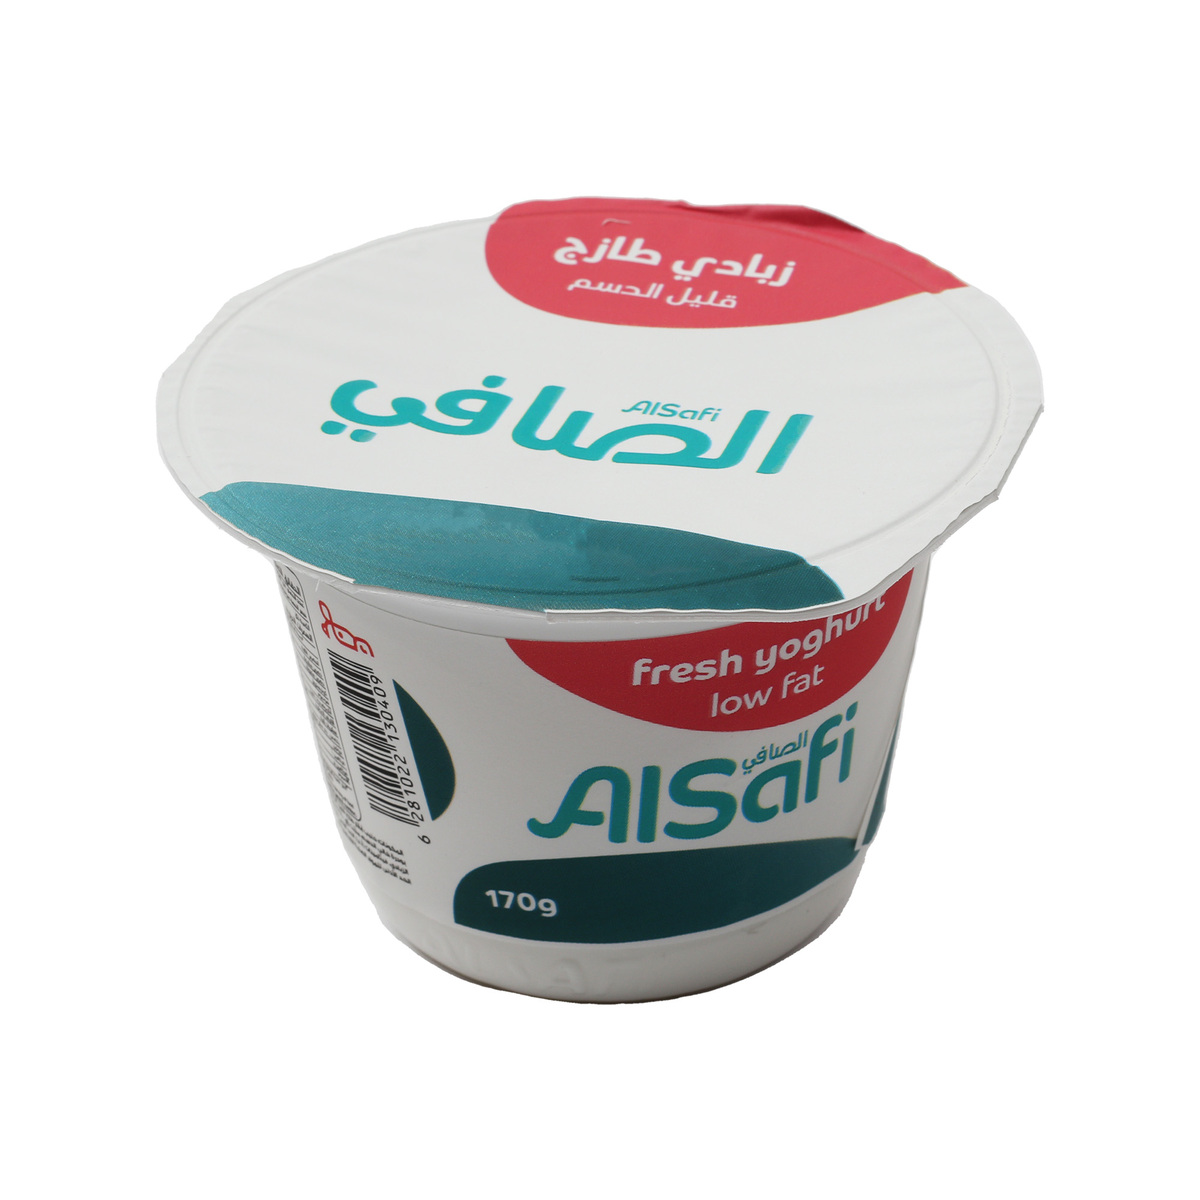 Al Safi Yoghurt L/F 170g 5+1